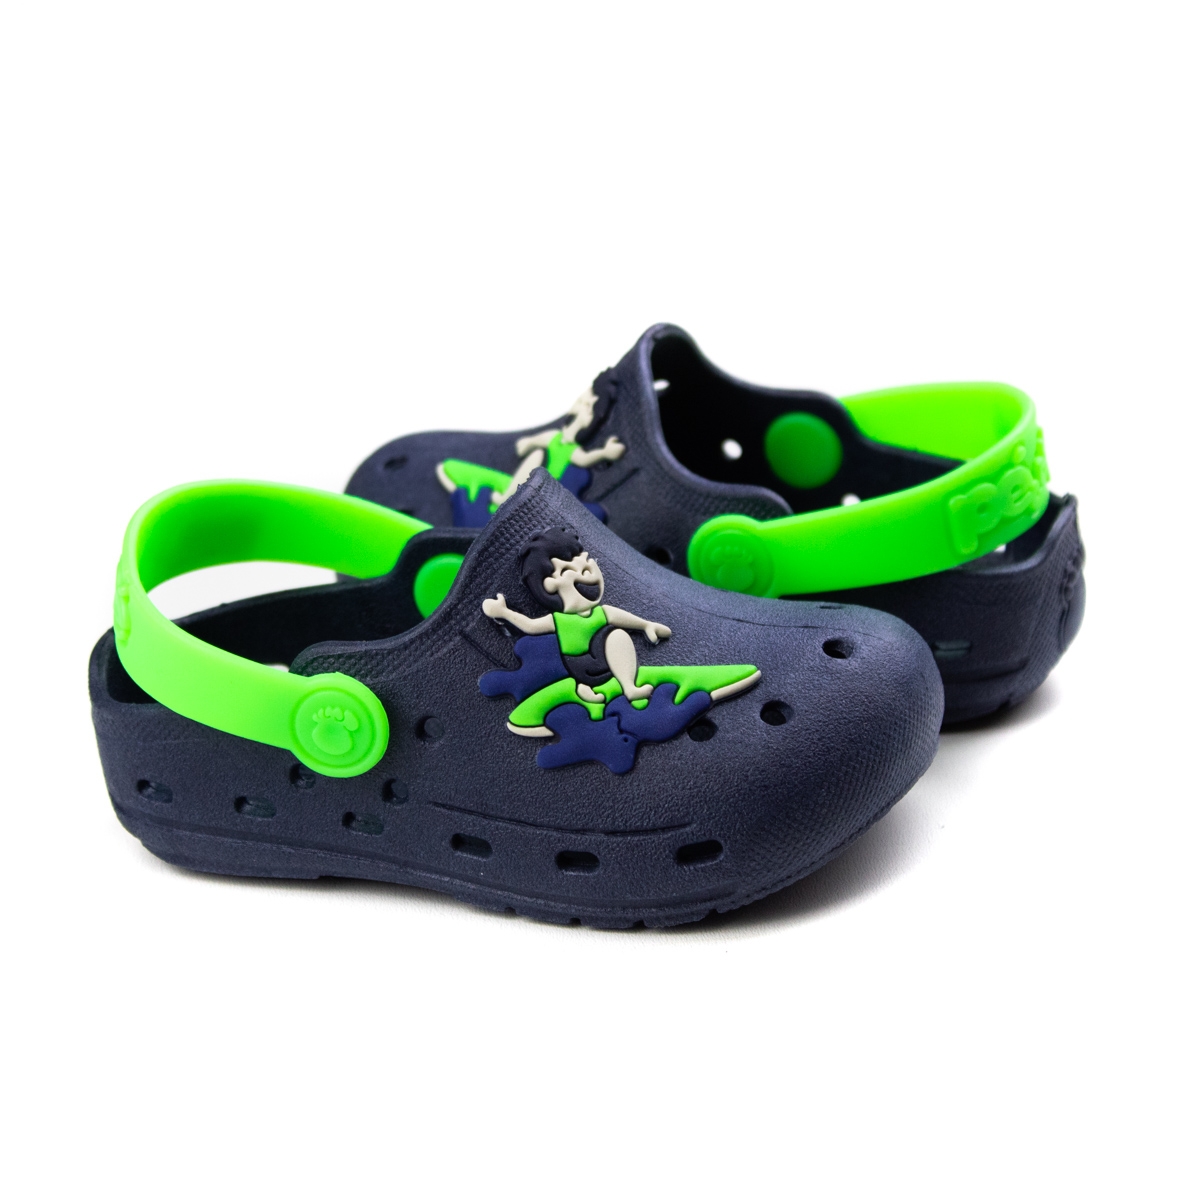 Crocs Surf Bebê Masculino Pé Com Pé - Marinho/verde